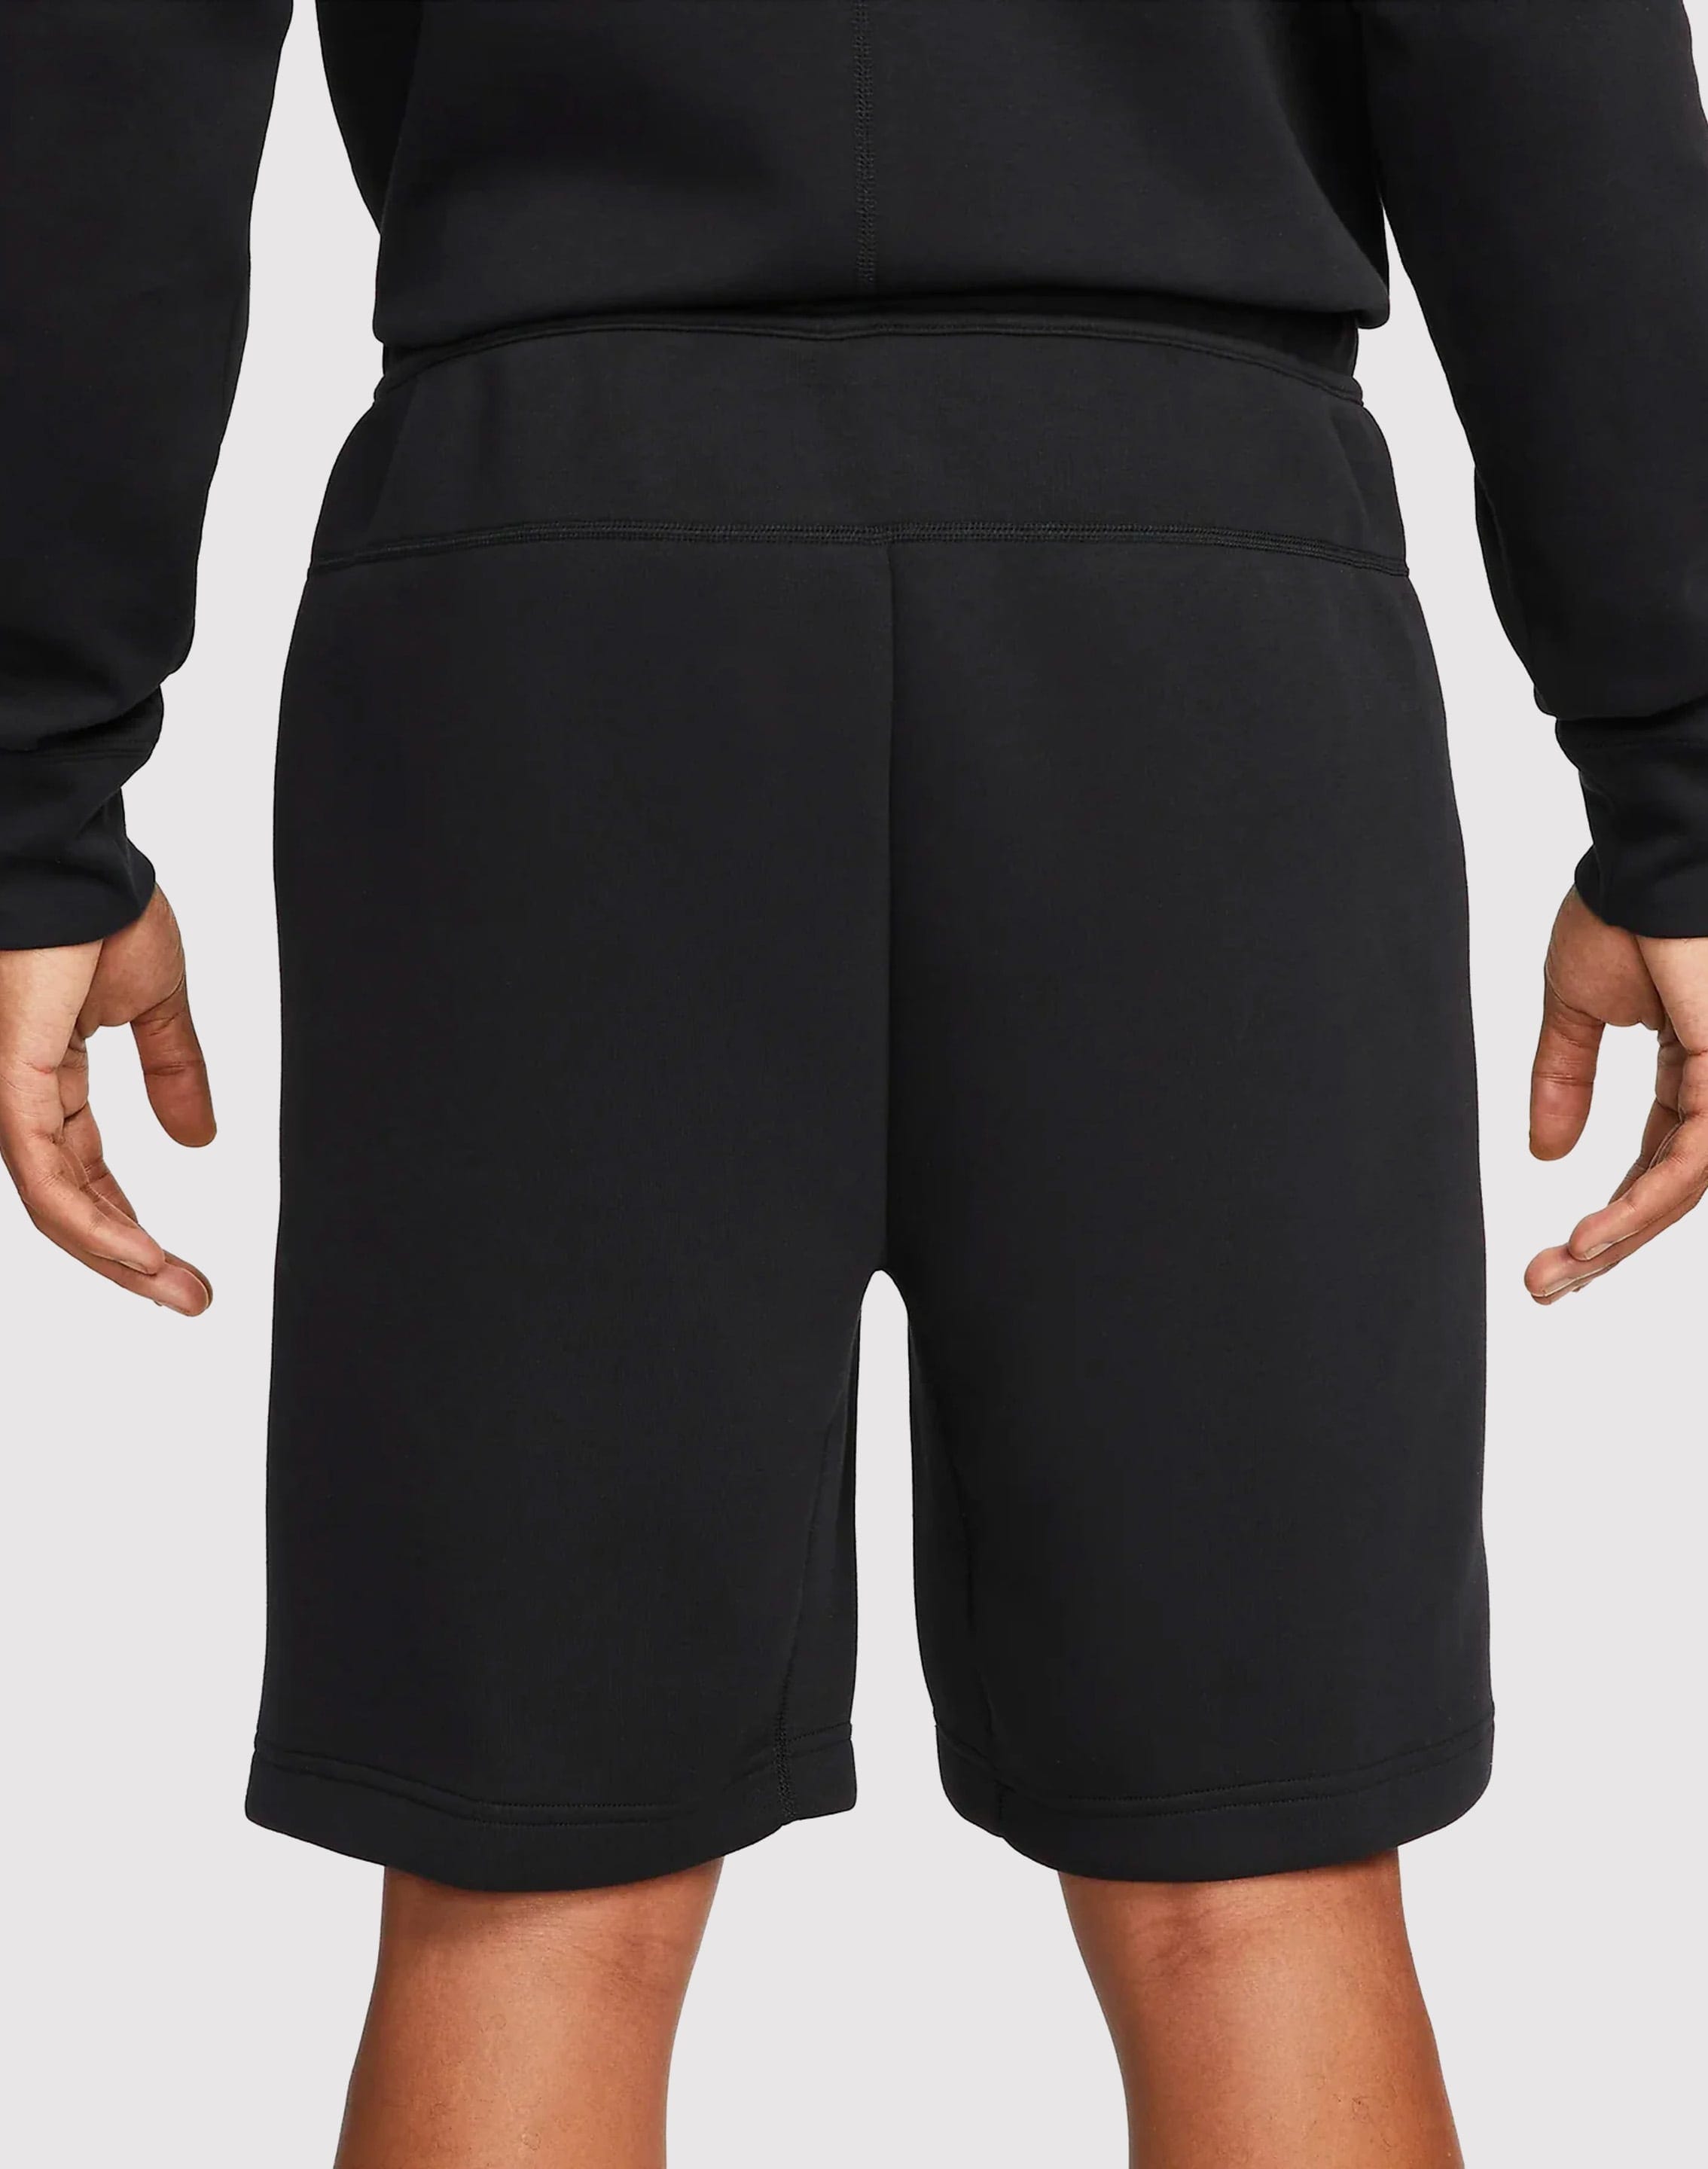 Nike Tech Fleece Shorts – DTLR